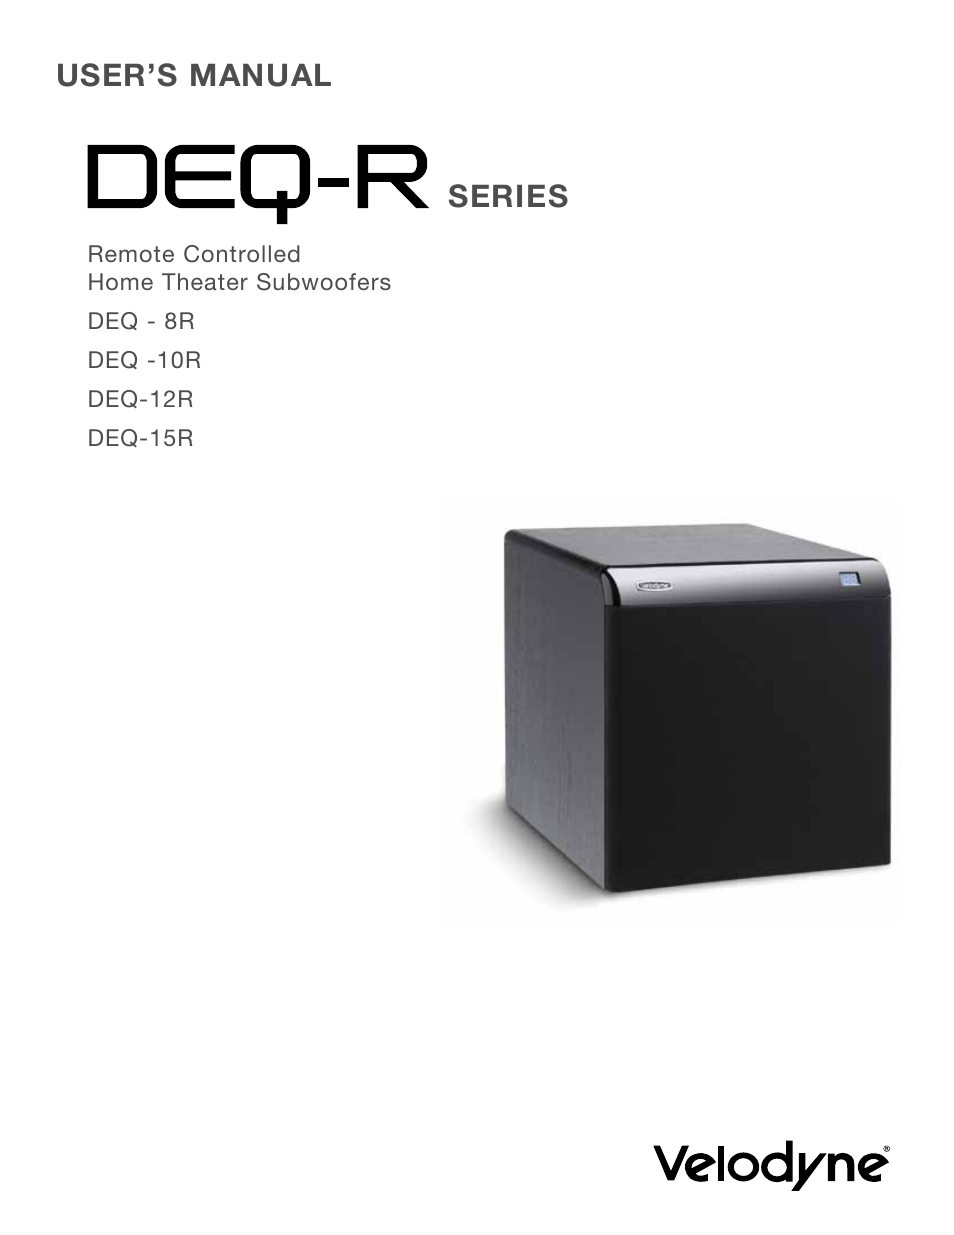 DEQ-R Series